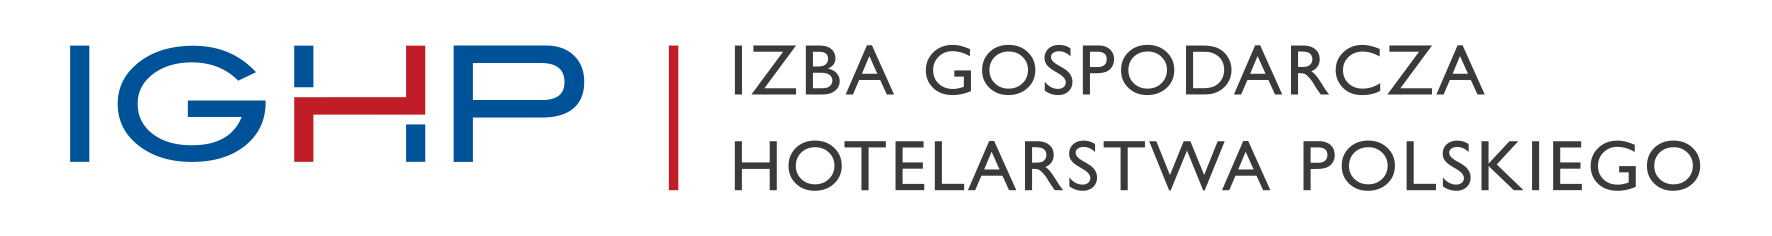 izba gospodarcza hotelarstwa polskiego